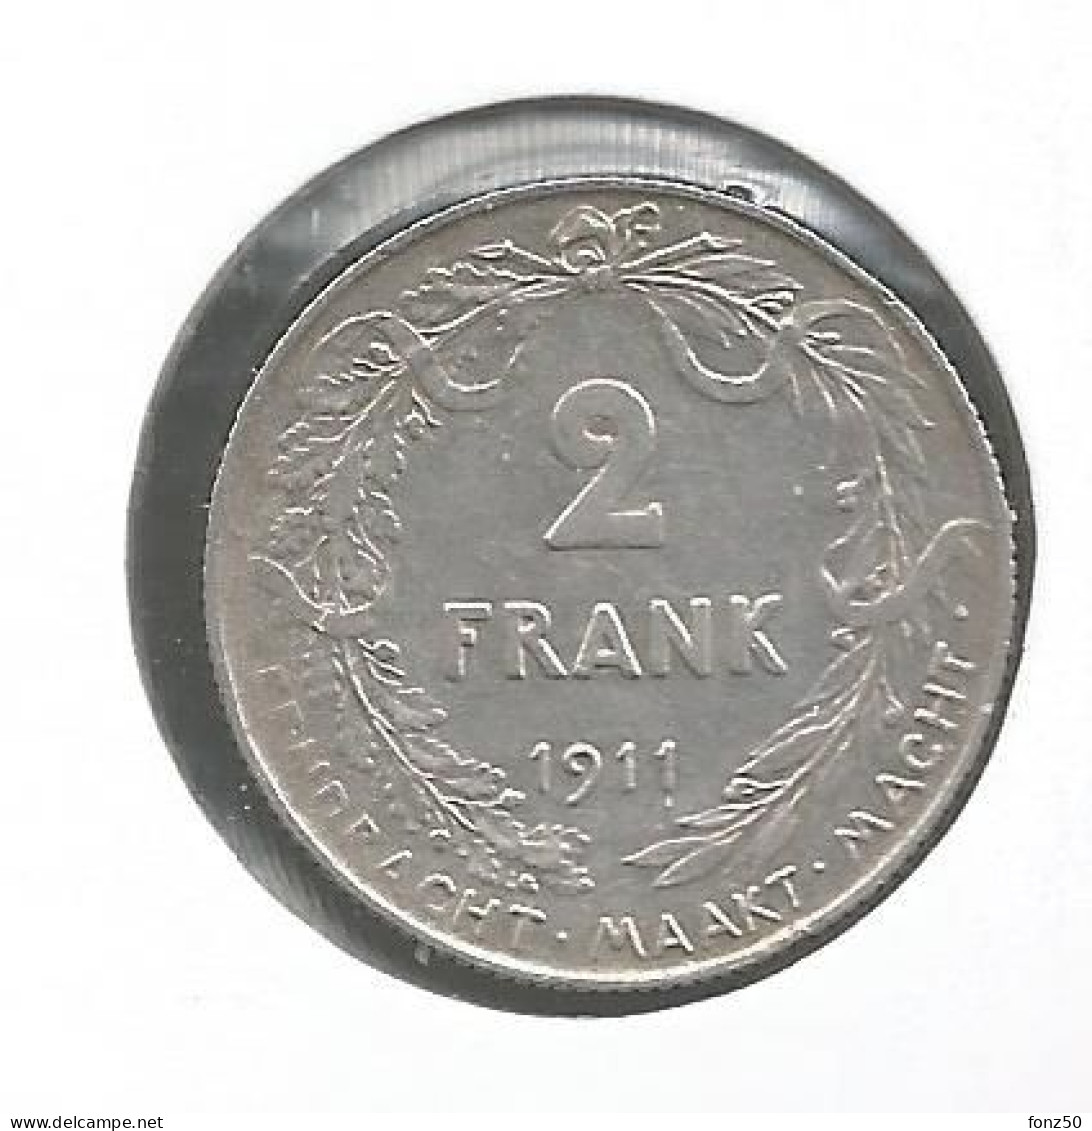 ALBERT I * 2 Frank 1911 Vlaams * Prachtig * Nr 12977 - 2 Frank